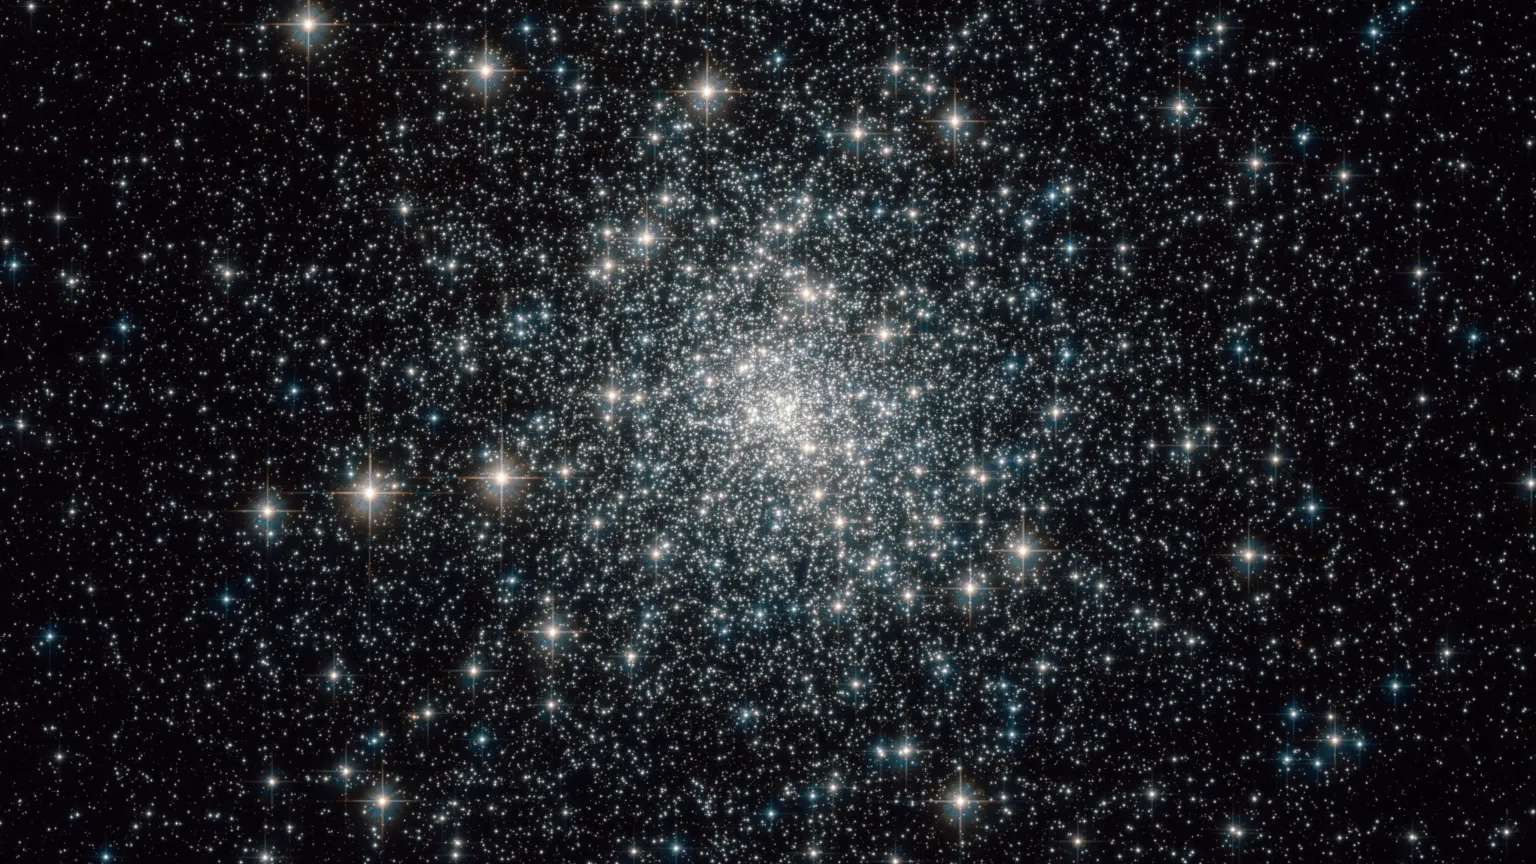 Nesta imagem, composta por exposições em luz visível e infravermelha, vê-se centenas de milhares de estrelas do aglomerado Messier 30 (ou M30), que está localizado a cerca de 28 mil anos-luz da Terra, na Constelação de Capricórnio. Embora os aglomerados globulares como o M30 sejam povoados principalmente por estrelas velhas, a densidade do enxame estelar faz com que algumas estrelas velhas aparentemente recuperem a sua juventude com o que se chama de “retardatários azuis”. Foram identificados dois tipos de retardatários azuis em M30: os que se formam em colisões quase frontais entre duas estrelas e também aqueles que estão em sistemas binários, nos quais uma estrela suga hidrogênio da sua companheira